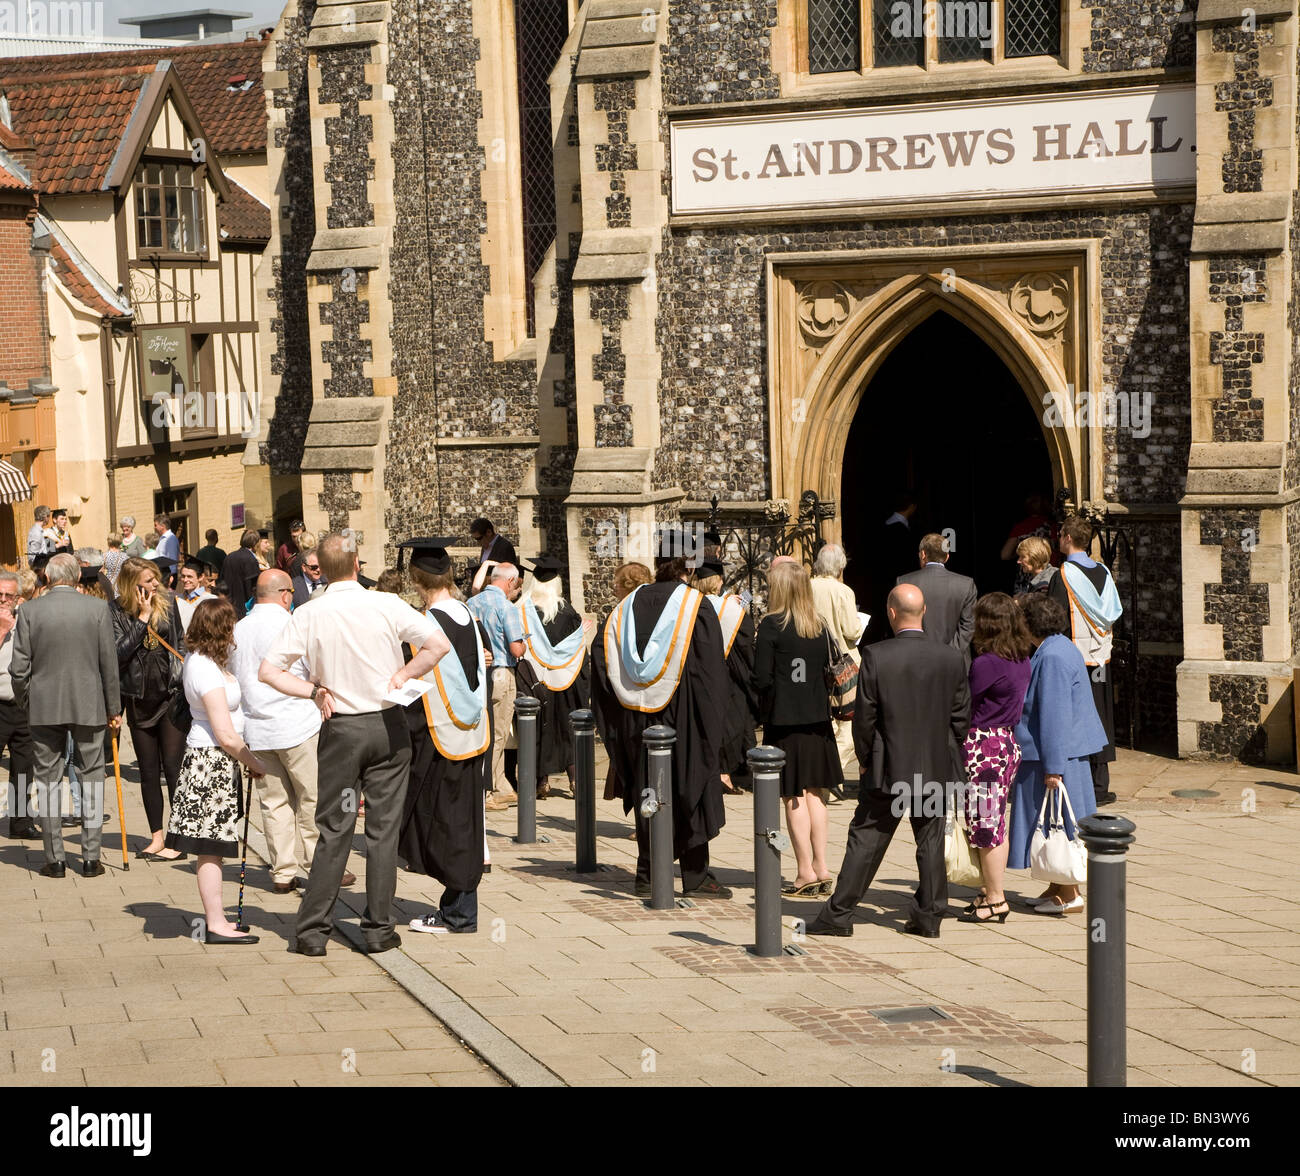 Le jour de graduation University College of the Arts Norwich Angleterre Banque D'Images